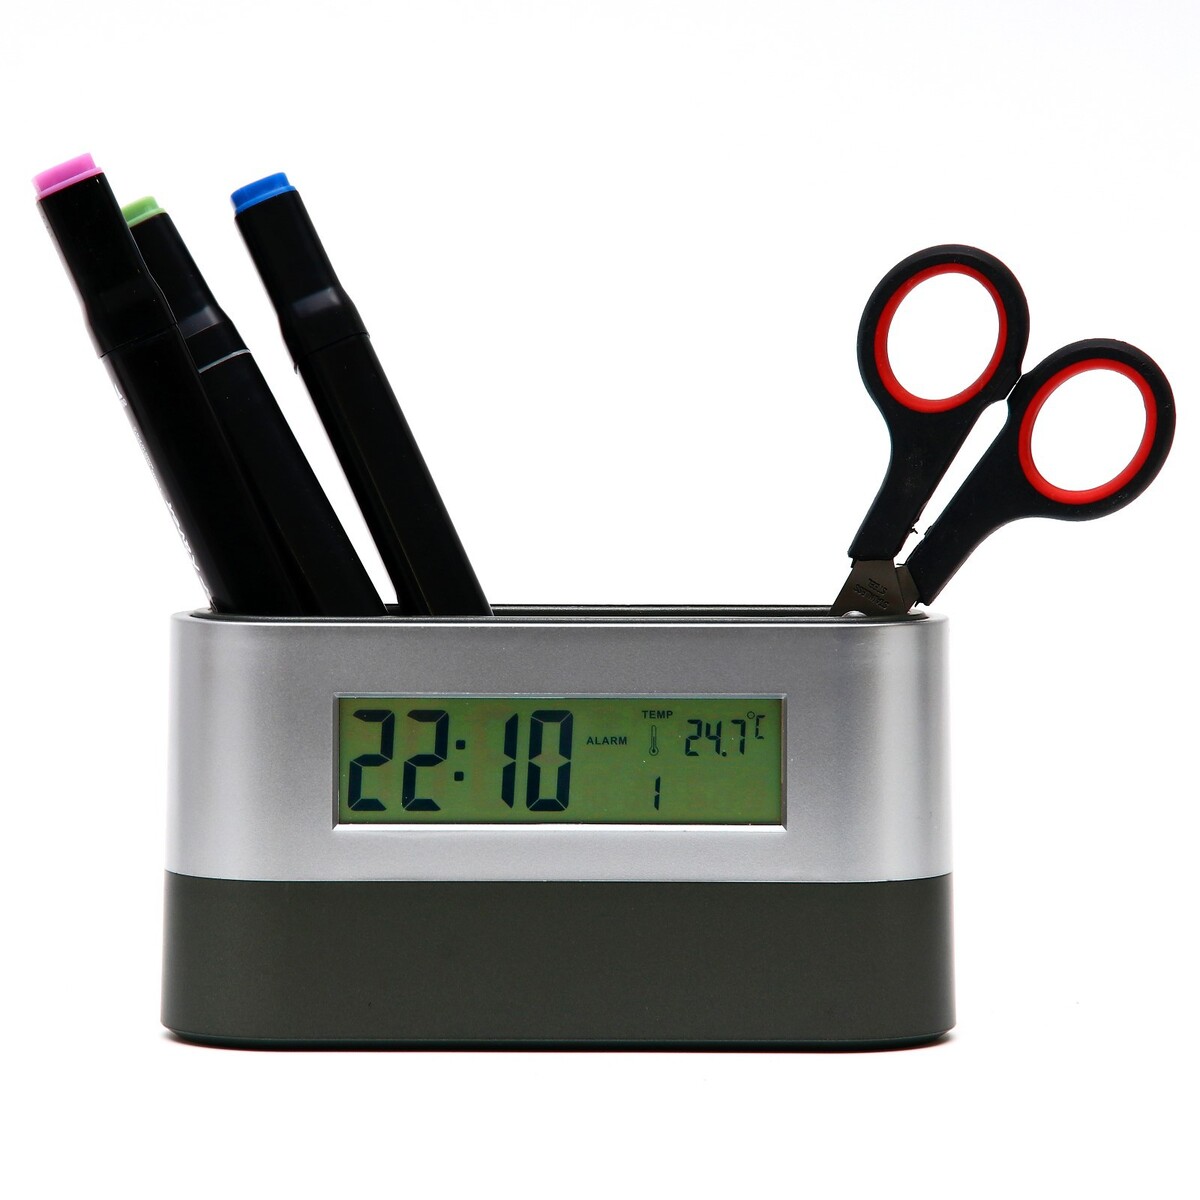 Часы - органайзер настольные: будильник, термометр, календарь, 15.1 х 4.7 см, 2ааа